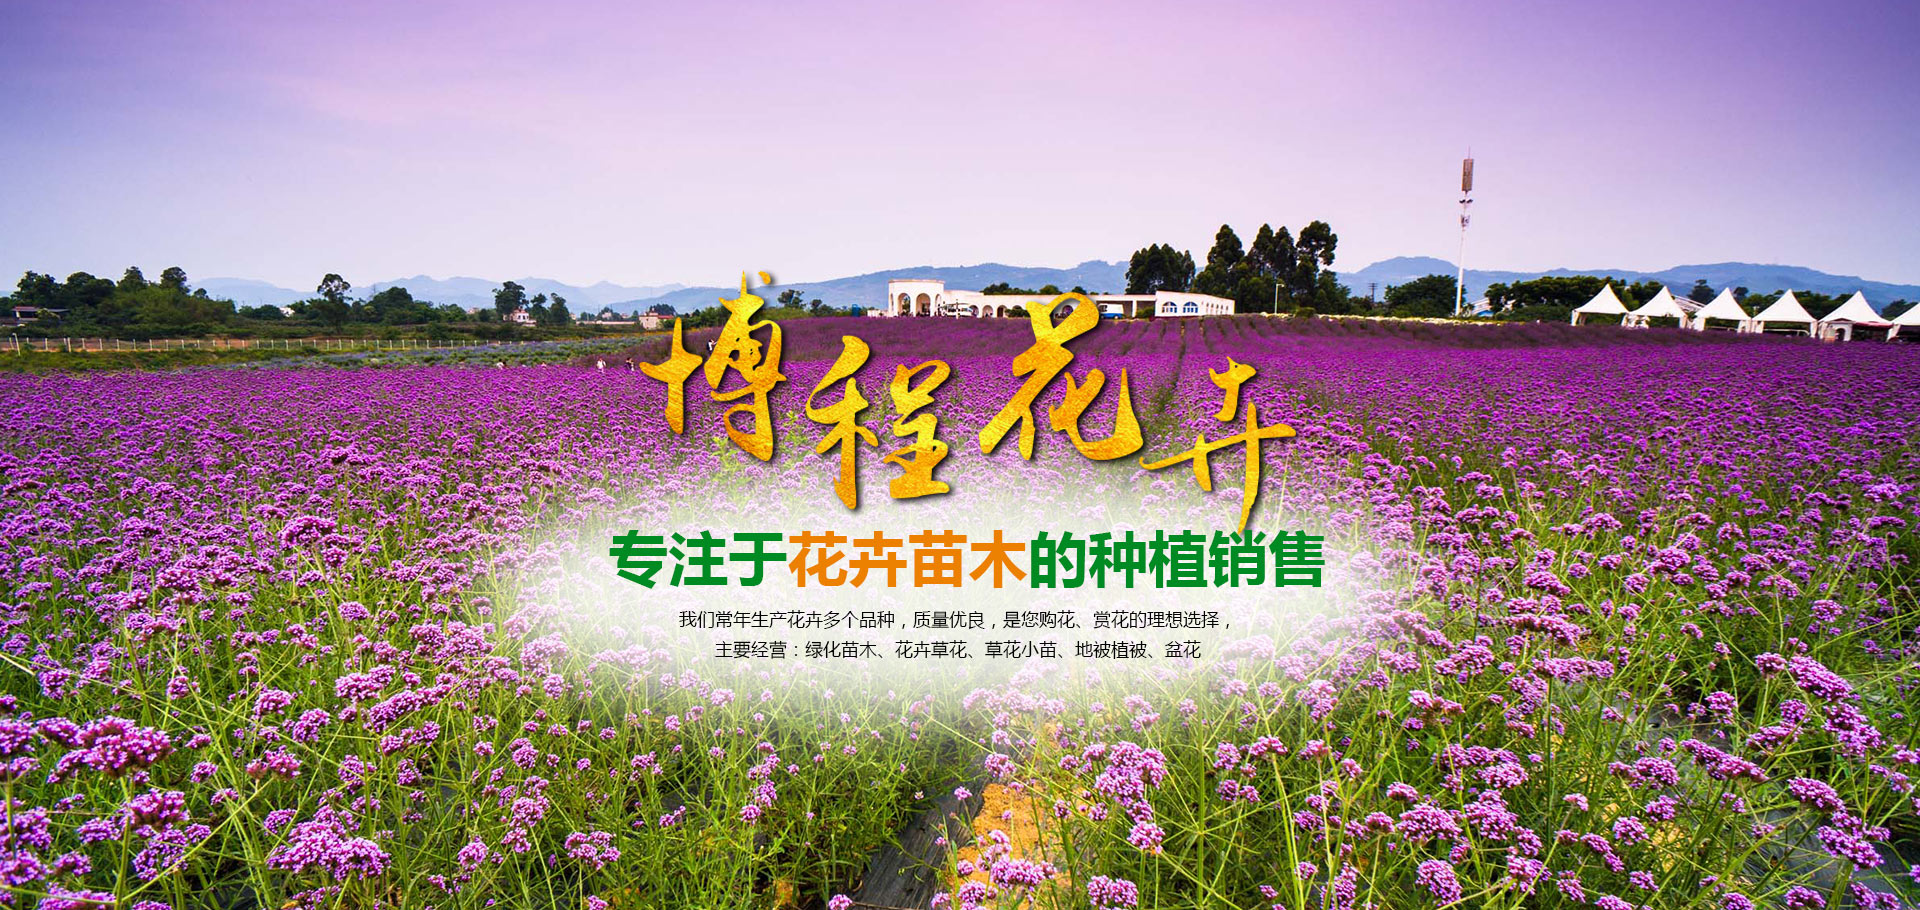 青州市博程花卉苗木有限公司